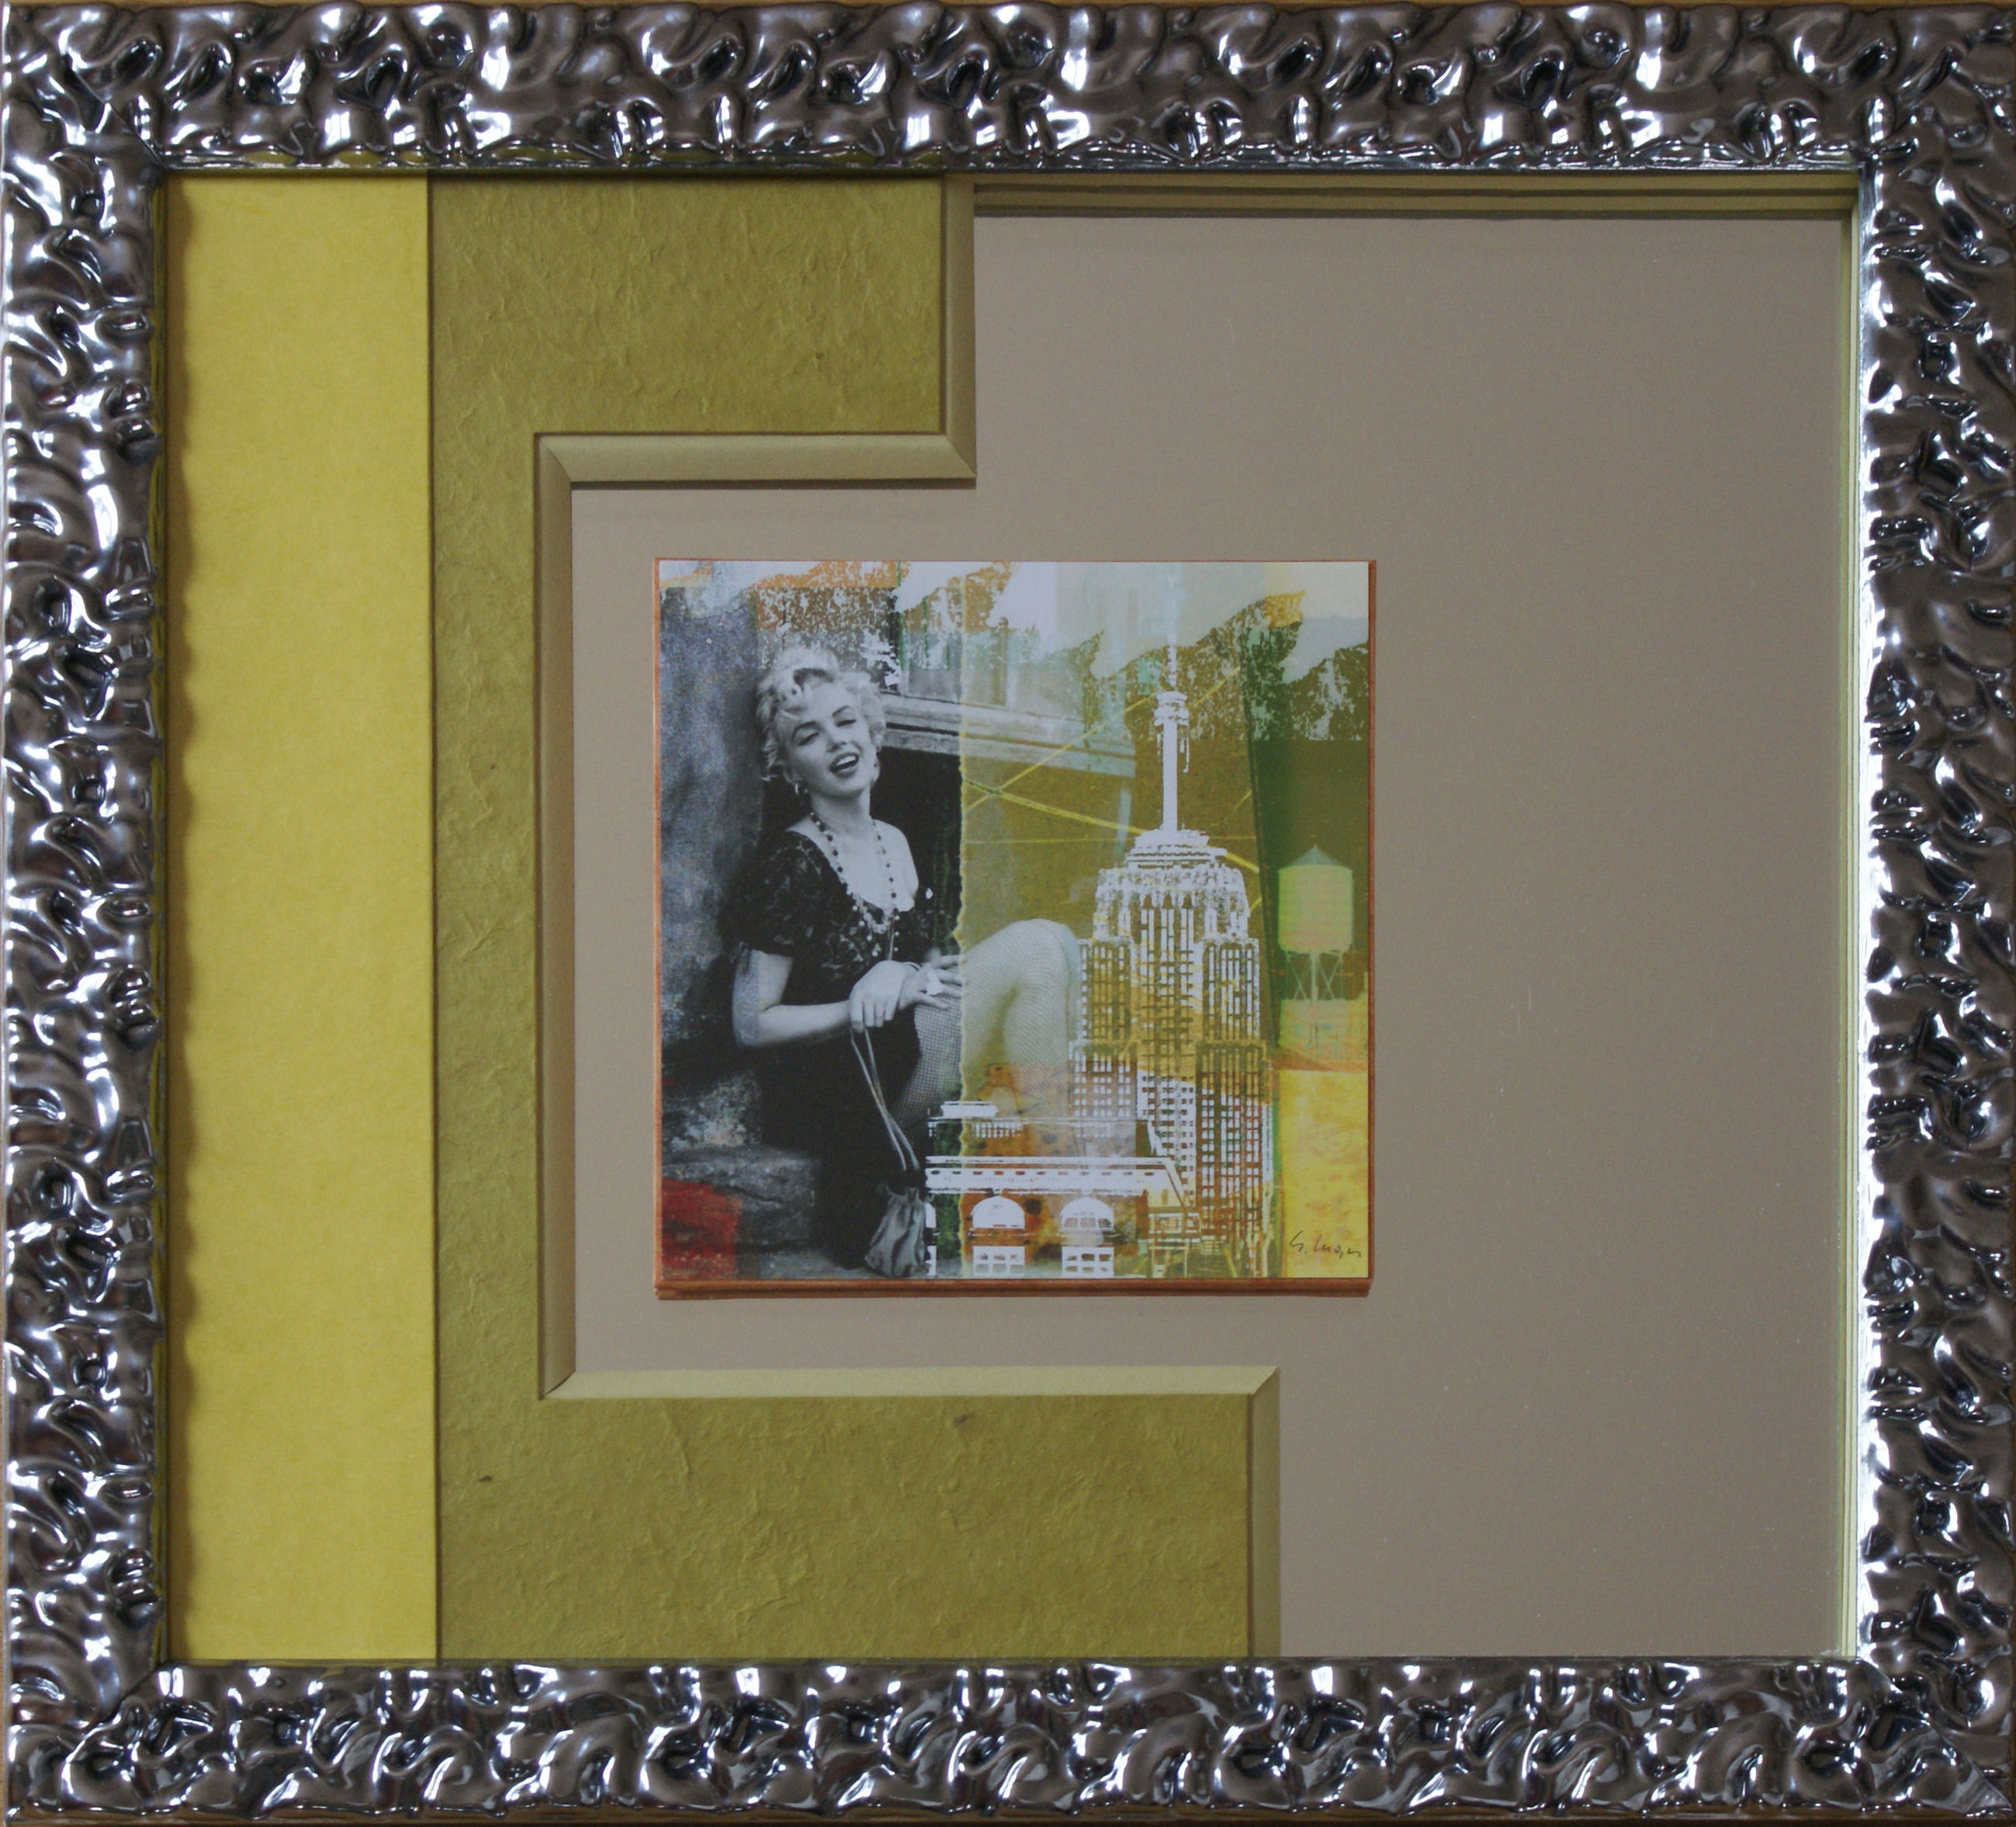 Cadrine : Framing on mirror of Marilyn